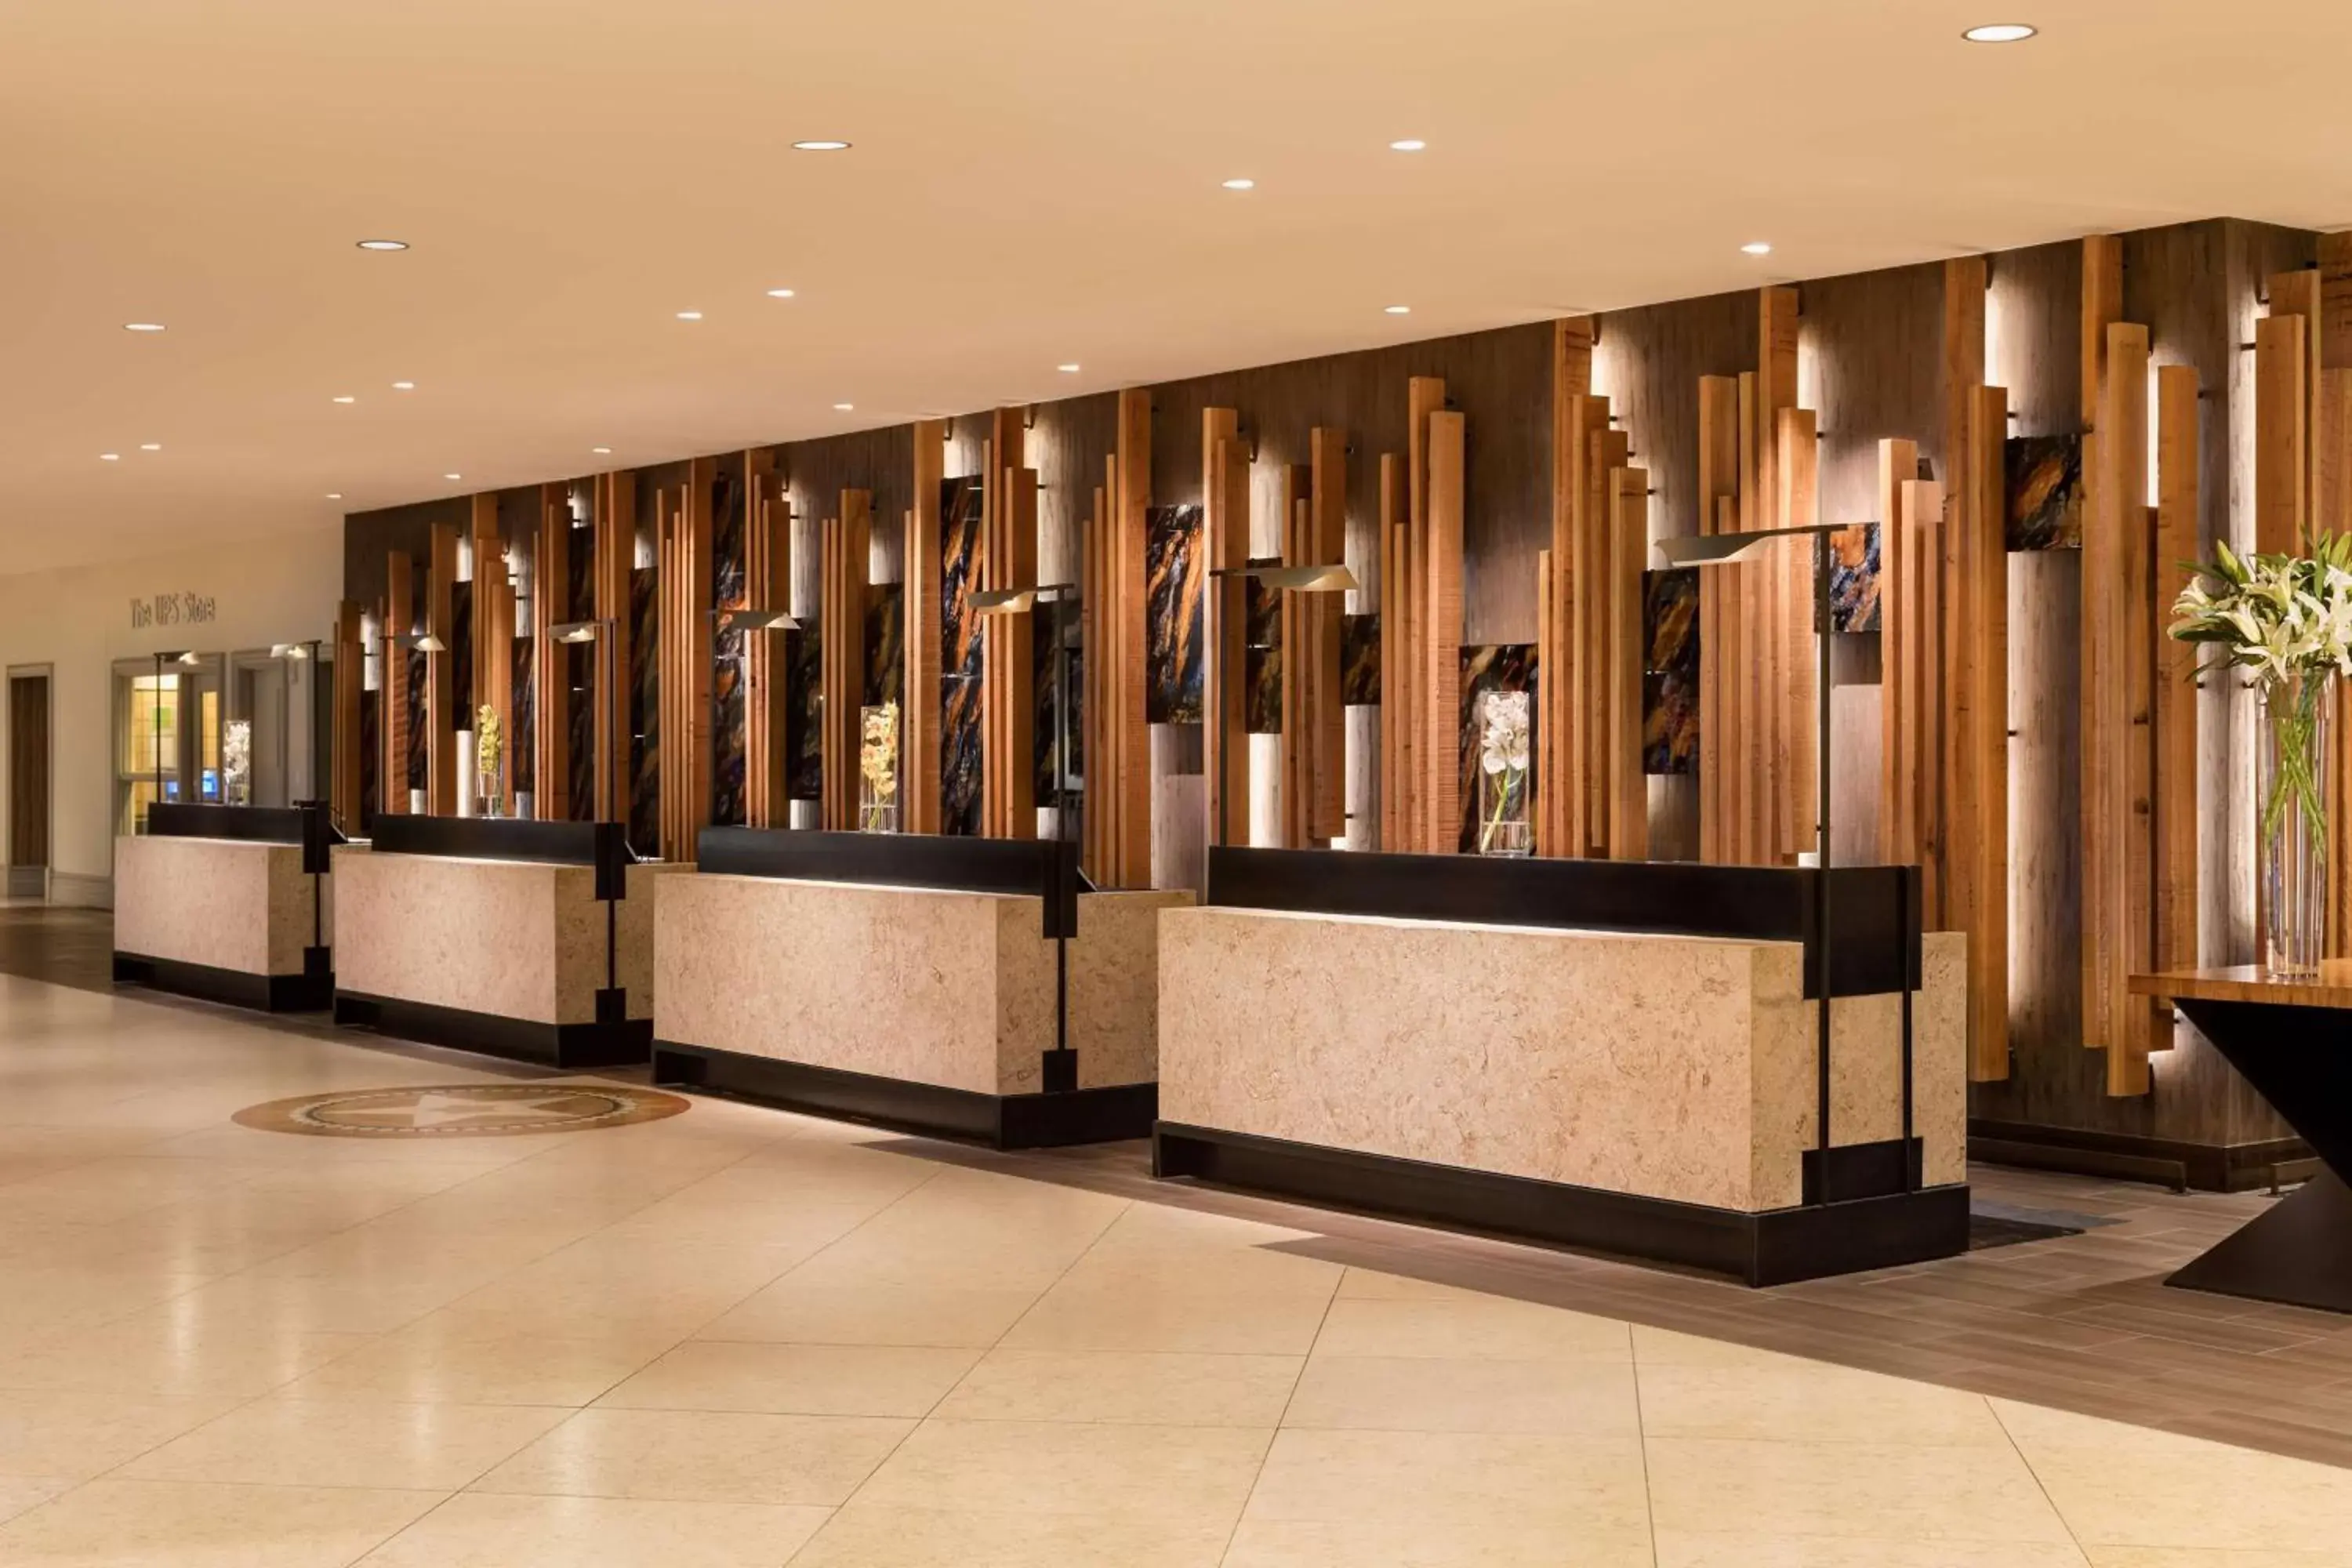 Lobby or reception, Lobby/Reception in Hilton Austin